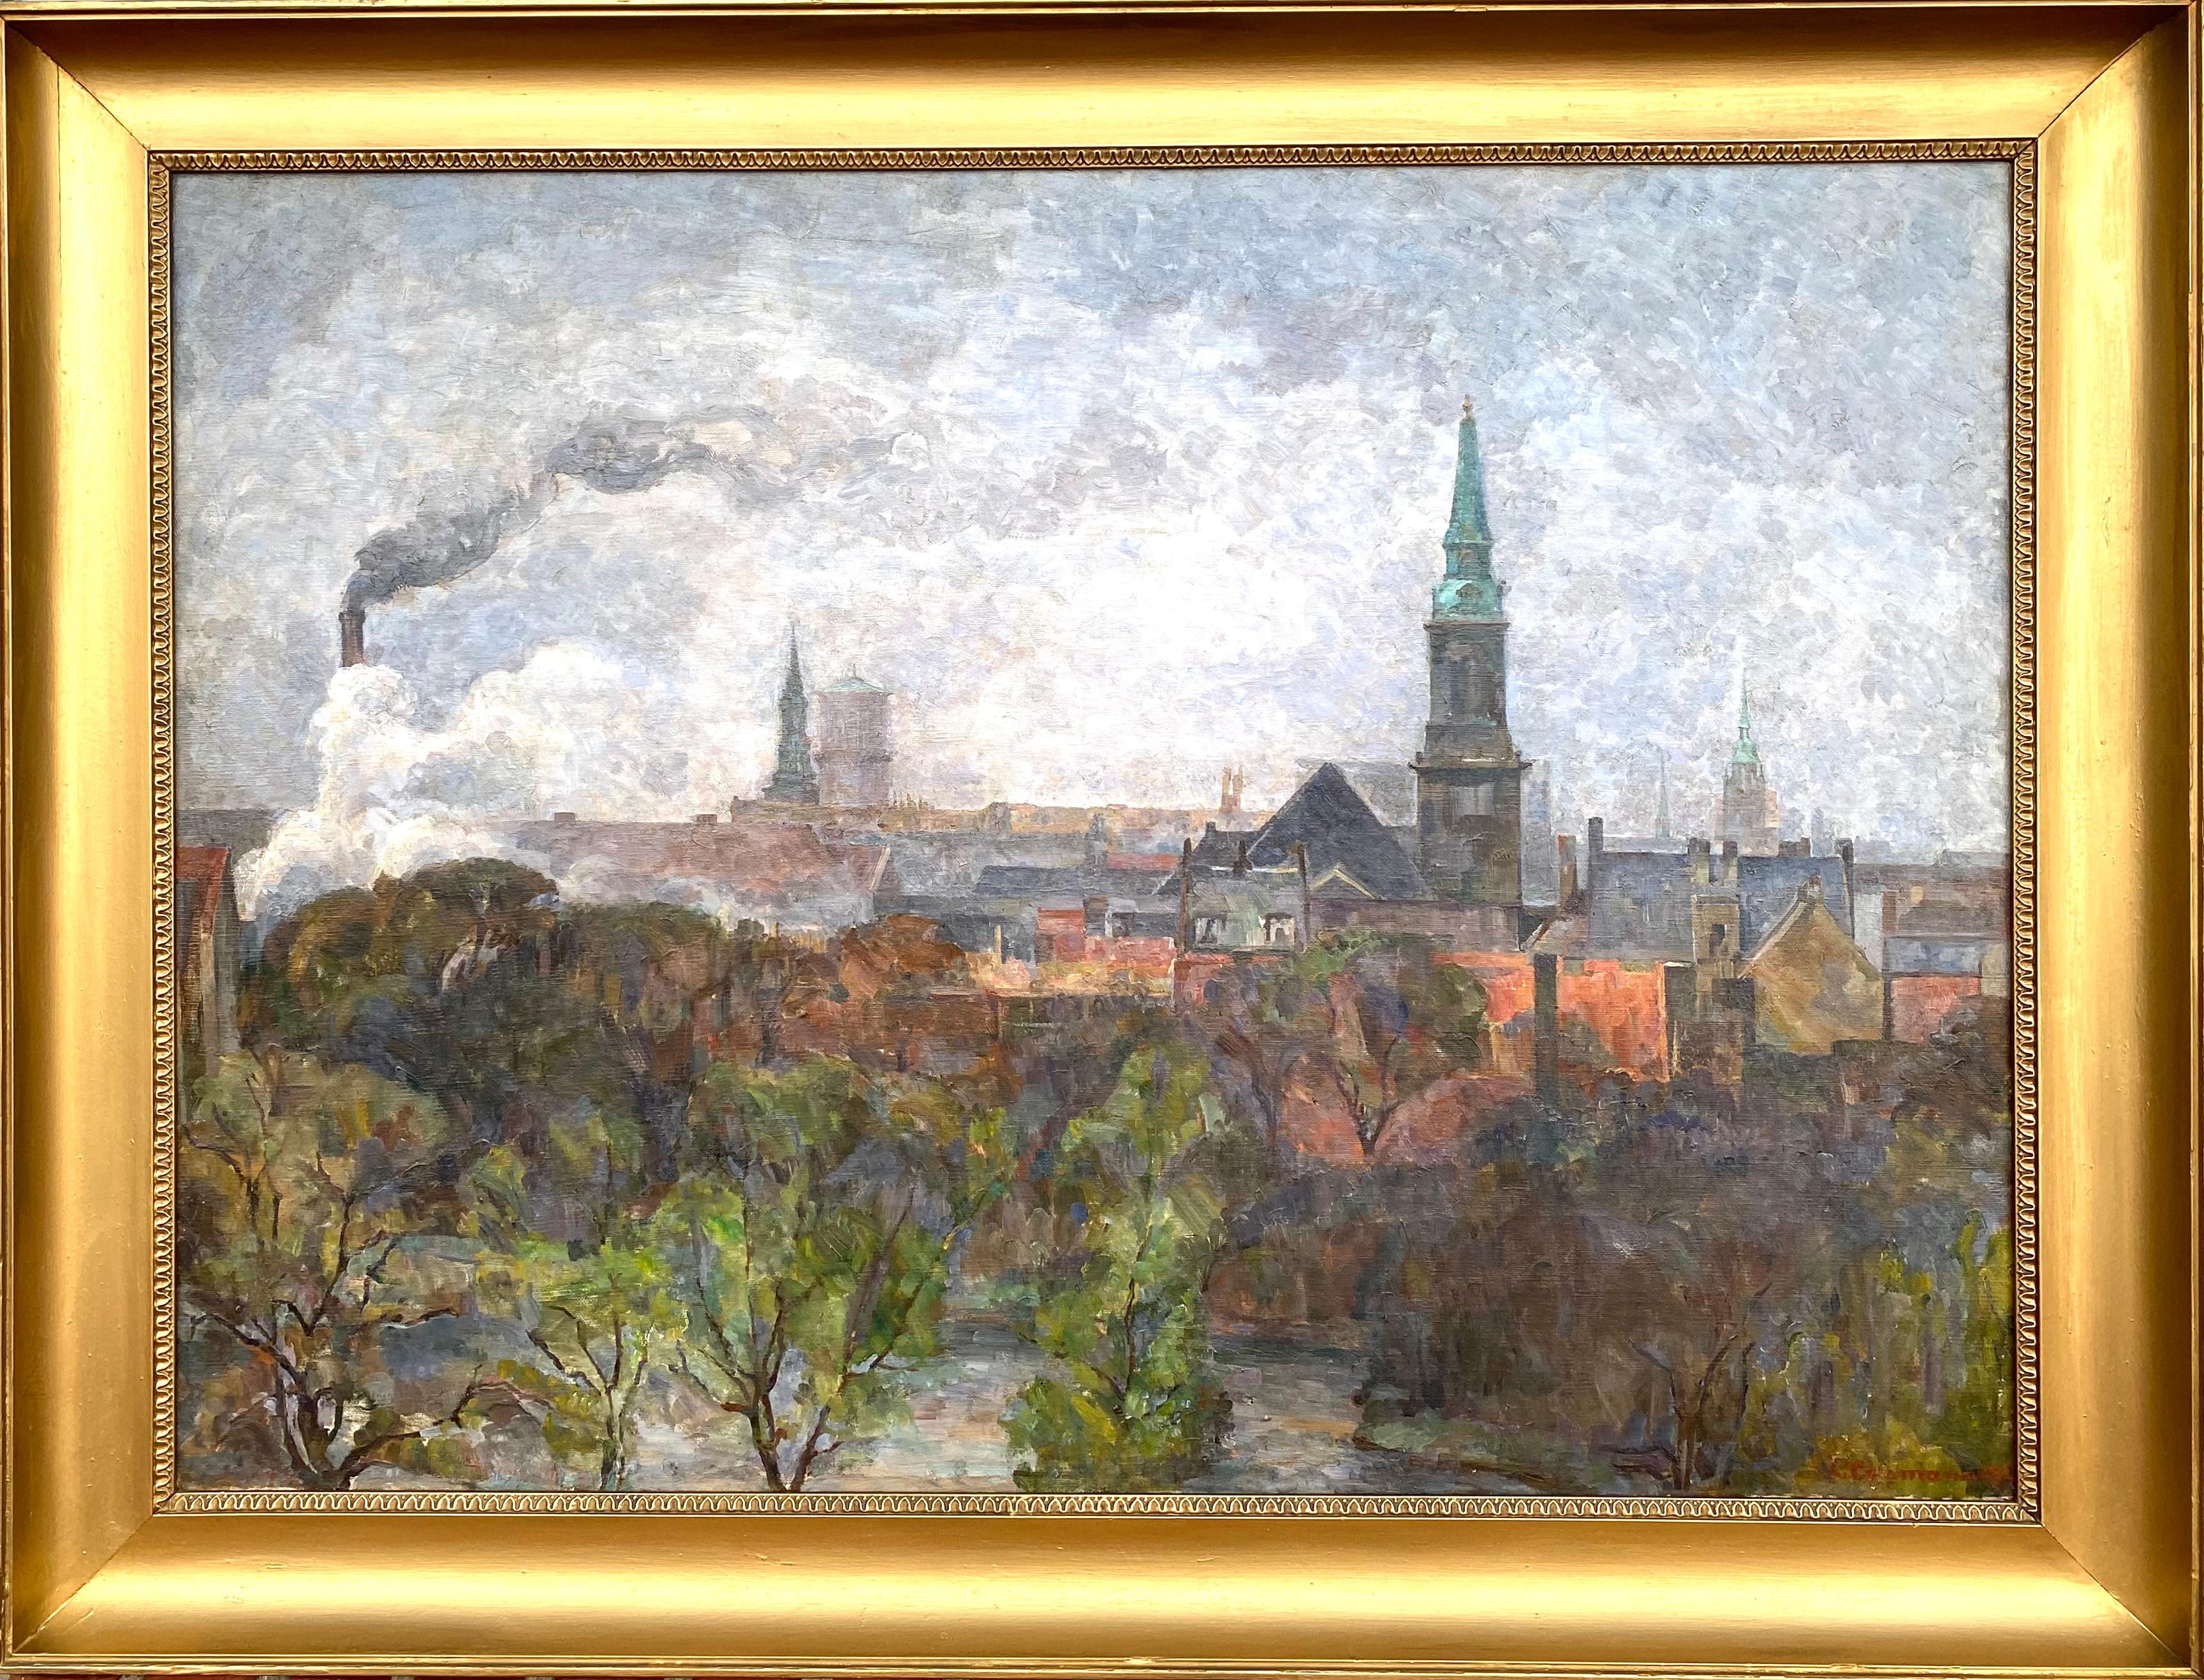 Kopenhagen von Amager aus gesehen (Post-Impressionismus), Painting, von Carla Colsmann Mohr